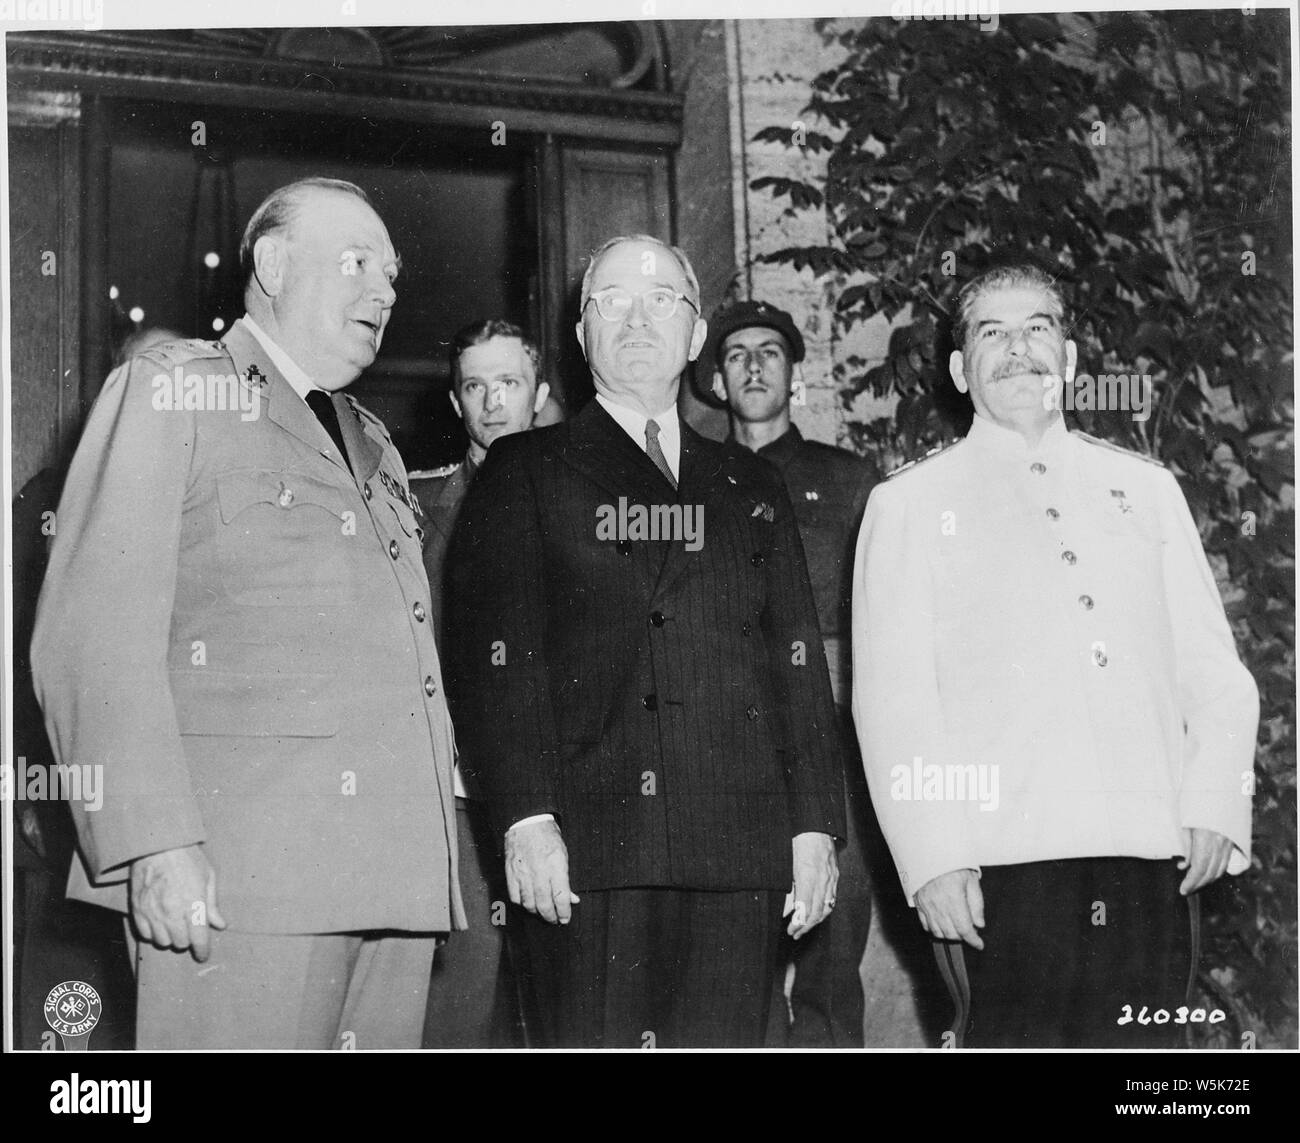 Le Premier ministre britannique Winston Churchill (à gauche), le Président Harry S. Truman, et le leader soviétique Joseph Staline sur les marches de la maison de M. Churchill lors de la Conférence de Potsdam en Allemagne. M. Churchill a juste donné un dîner pour M. Truman et M. Staline. Banque D'Images